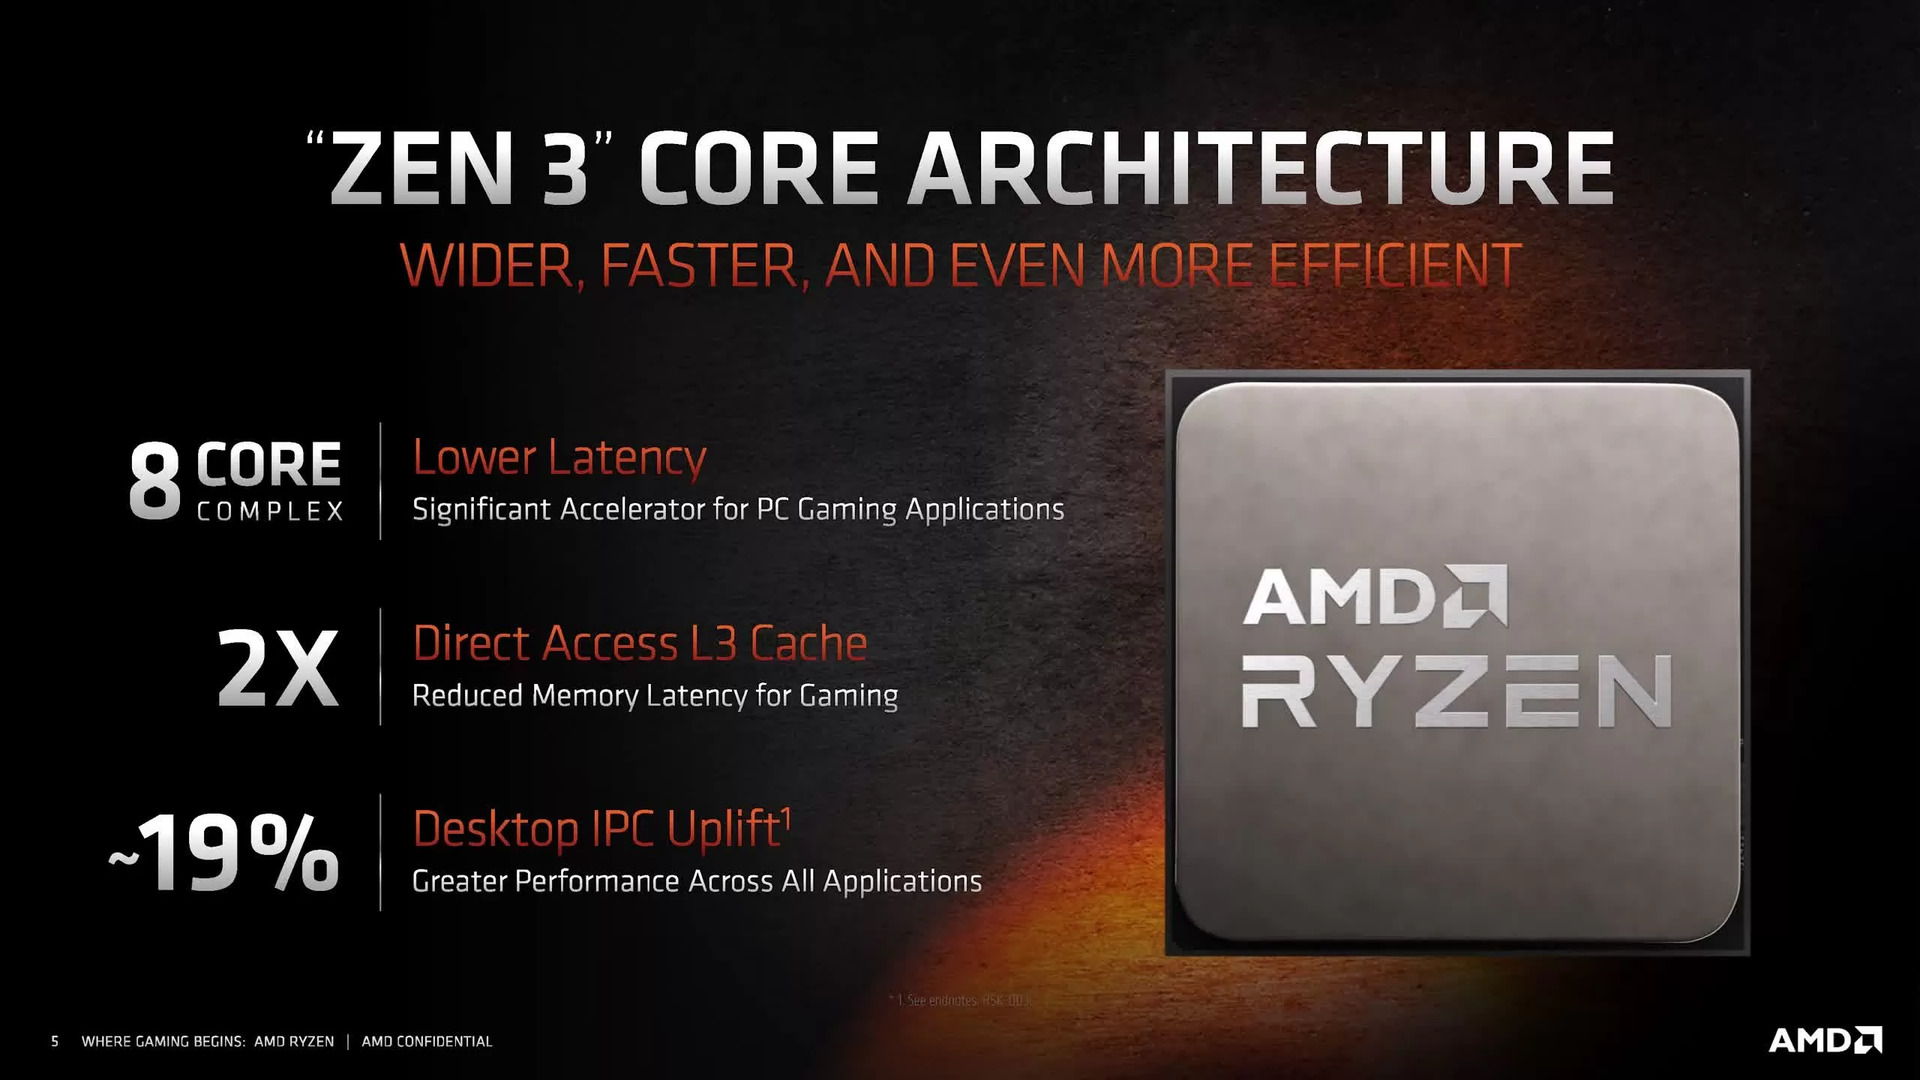 Features of Ryzen 5000 processors